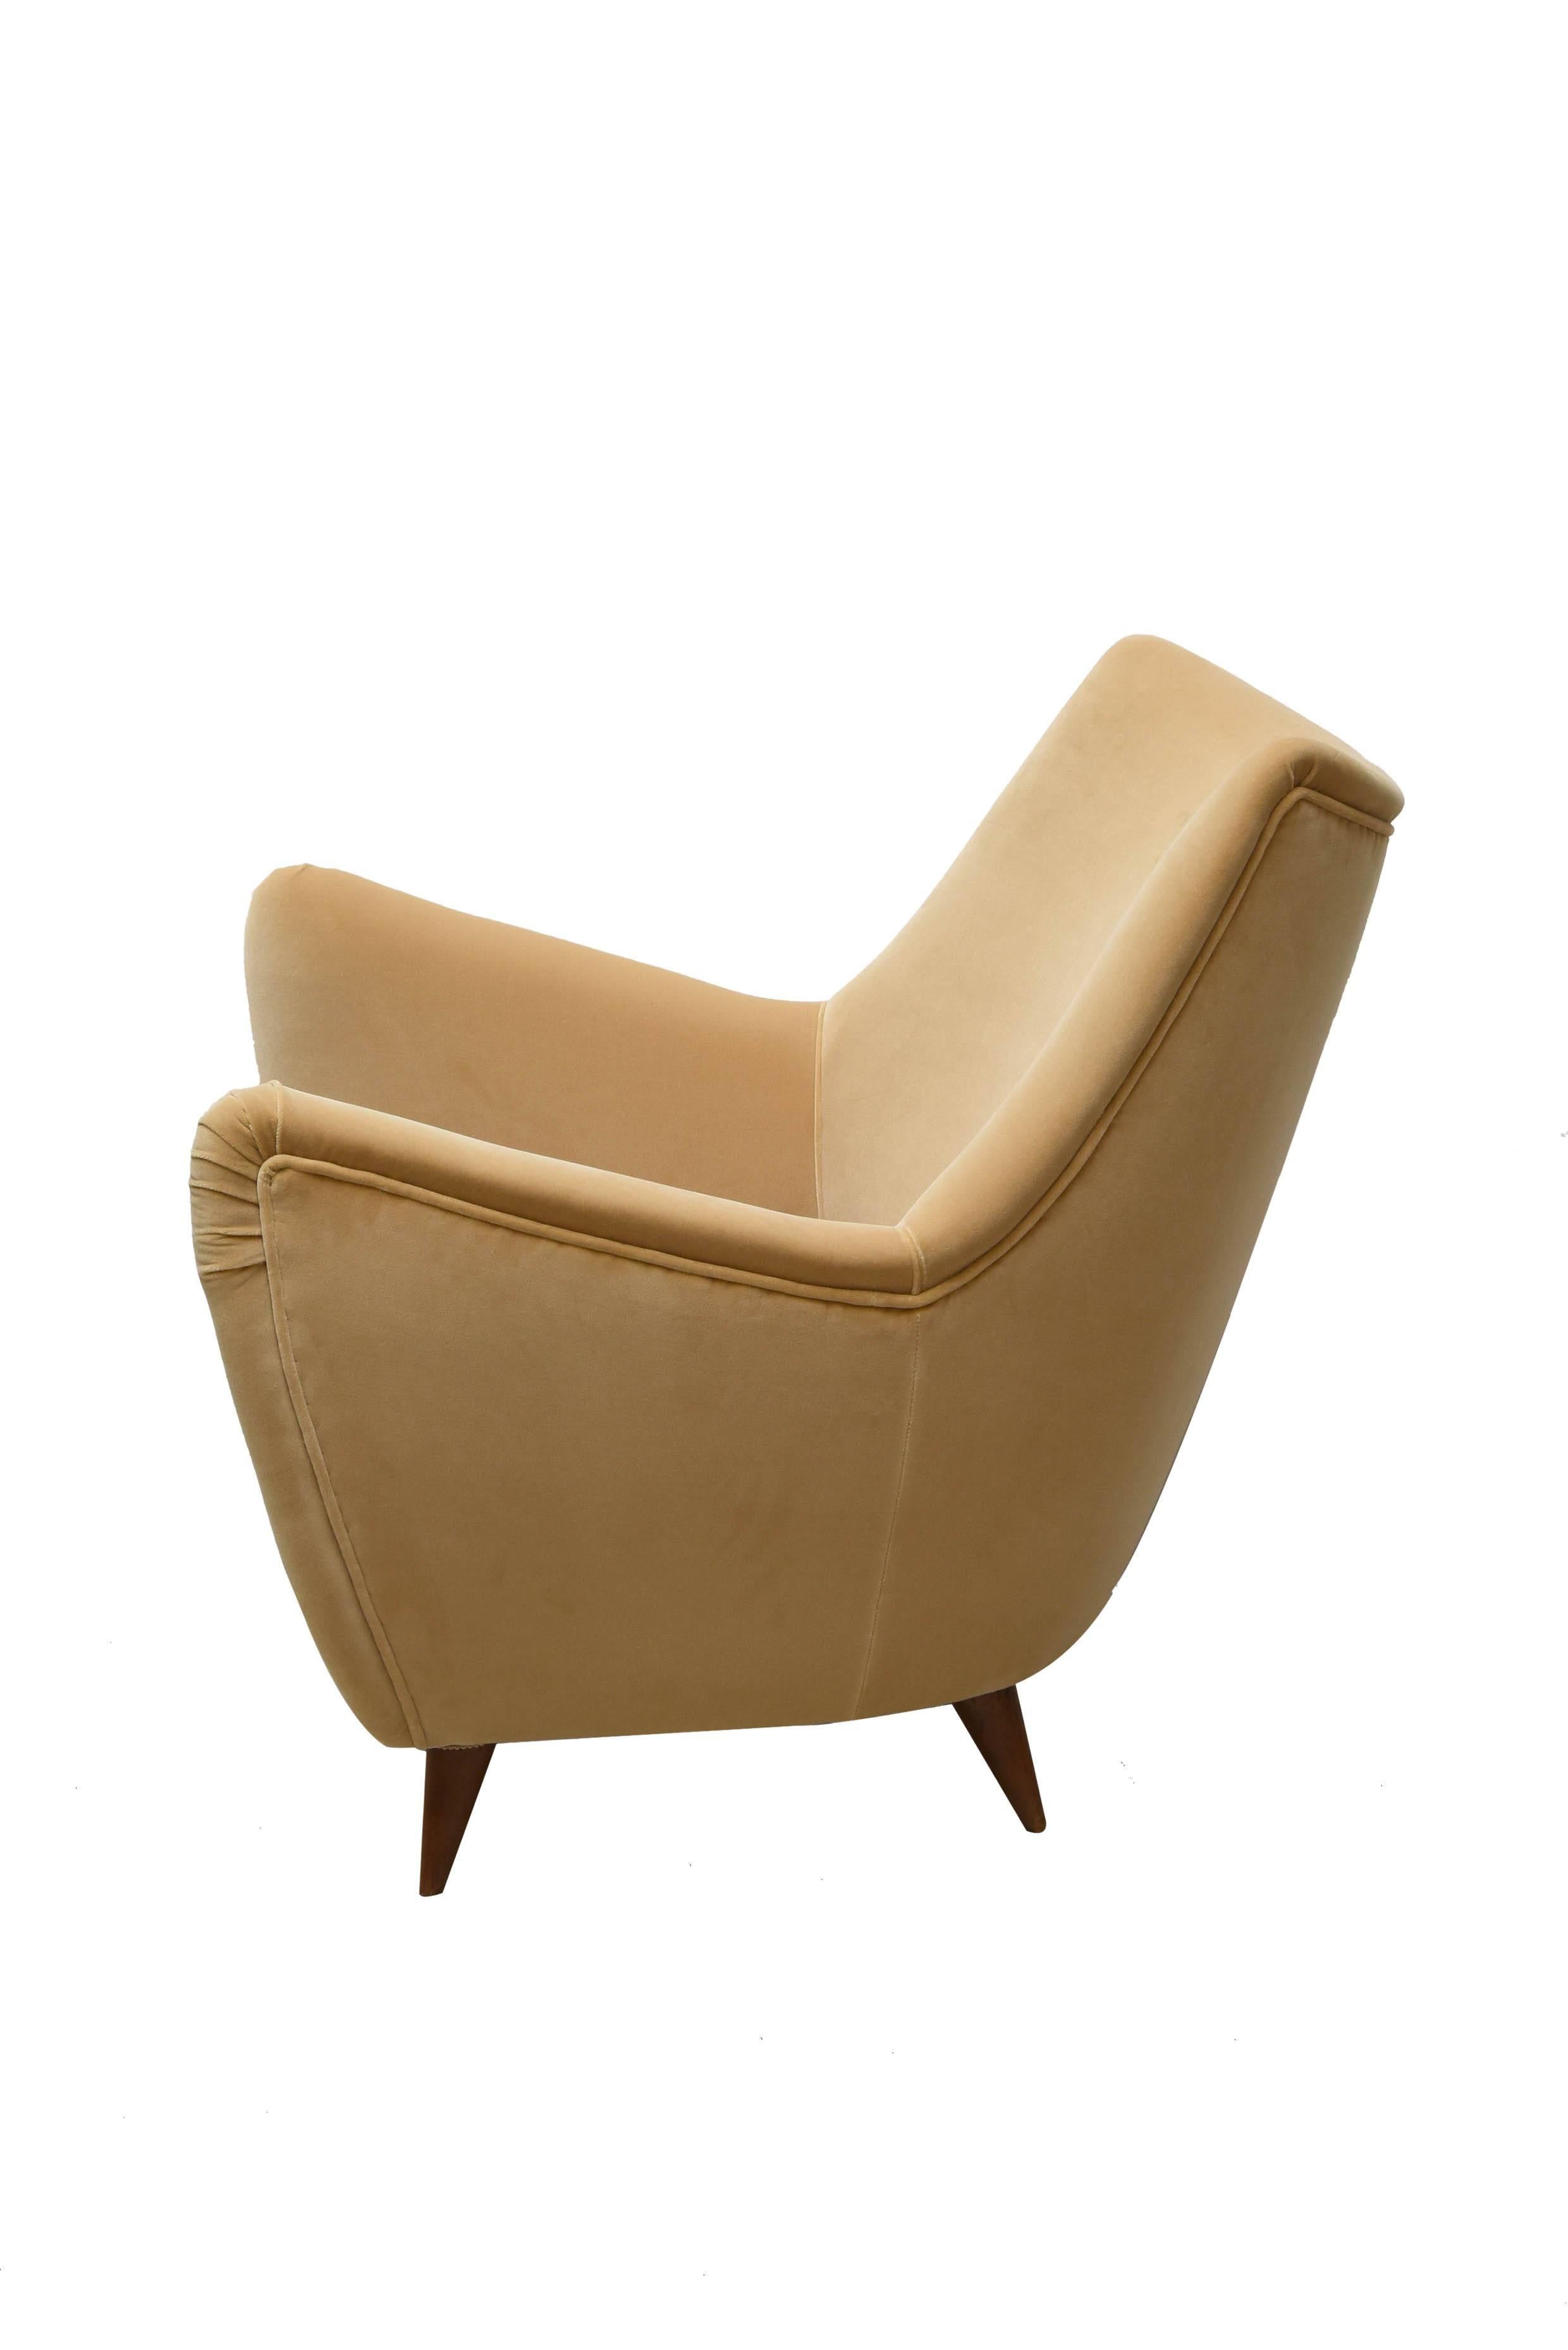 Italian 1950s Melchiorre Bega armchair